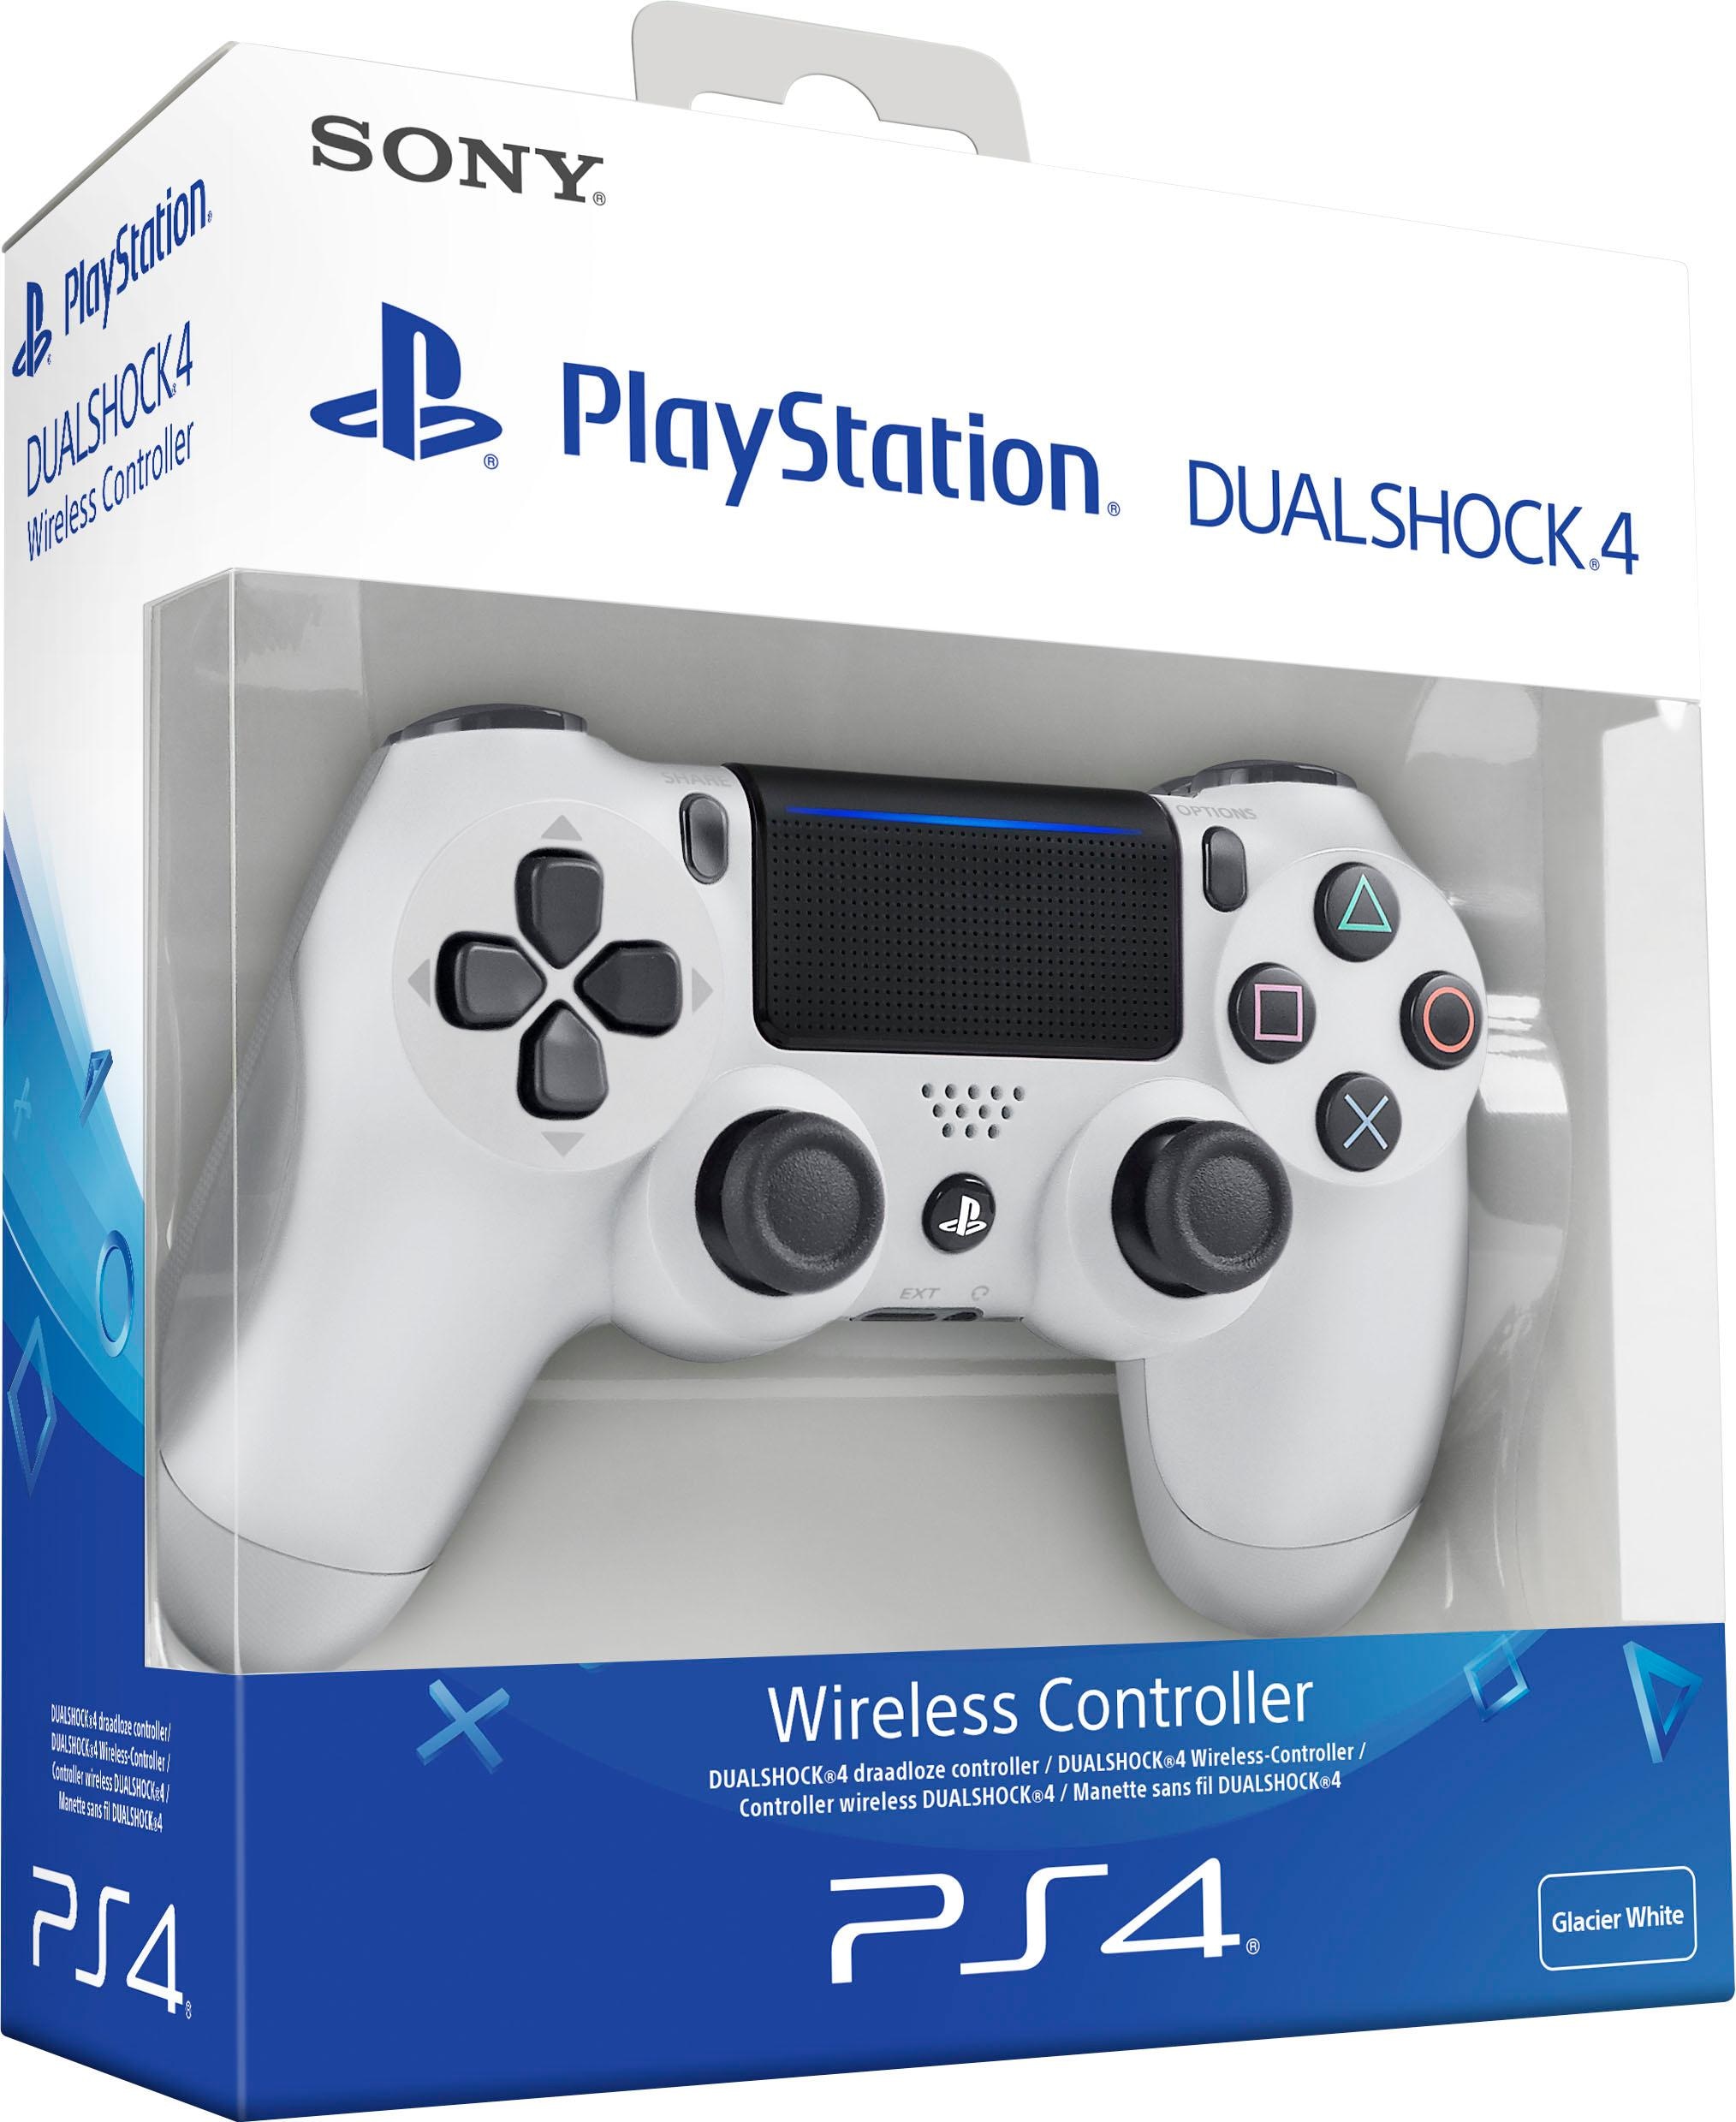 PlayStation kaufen »Dualshock« 4 Wireless-Controller online